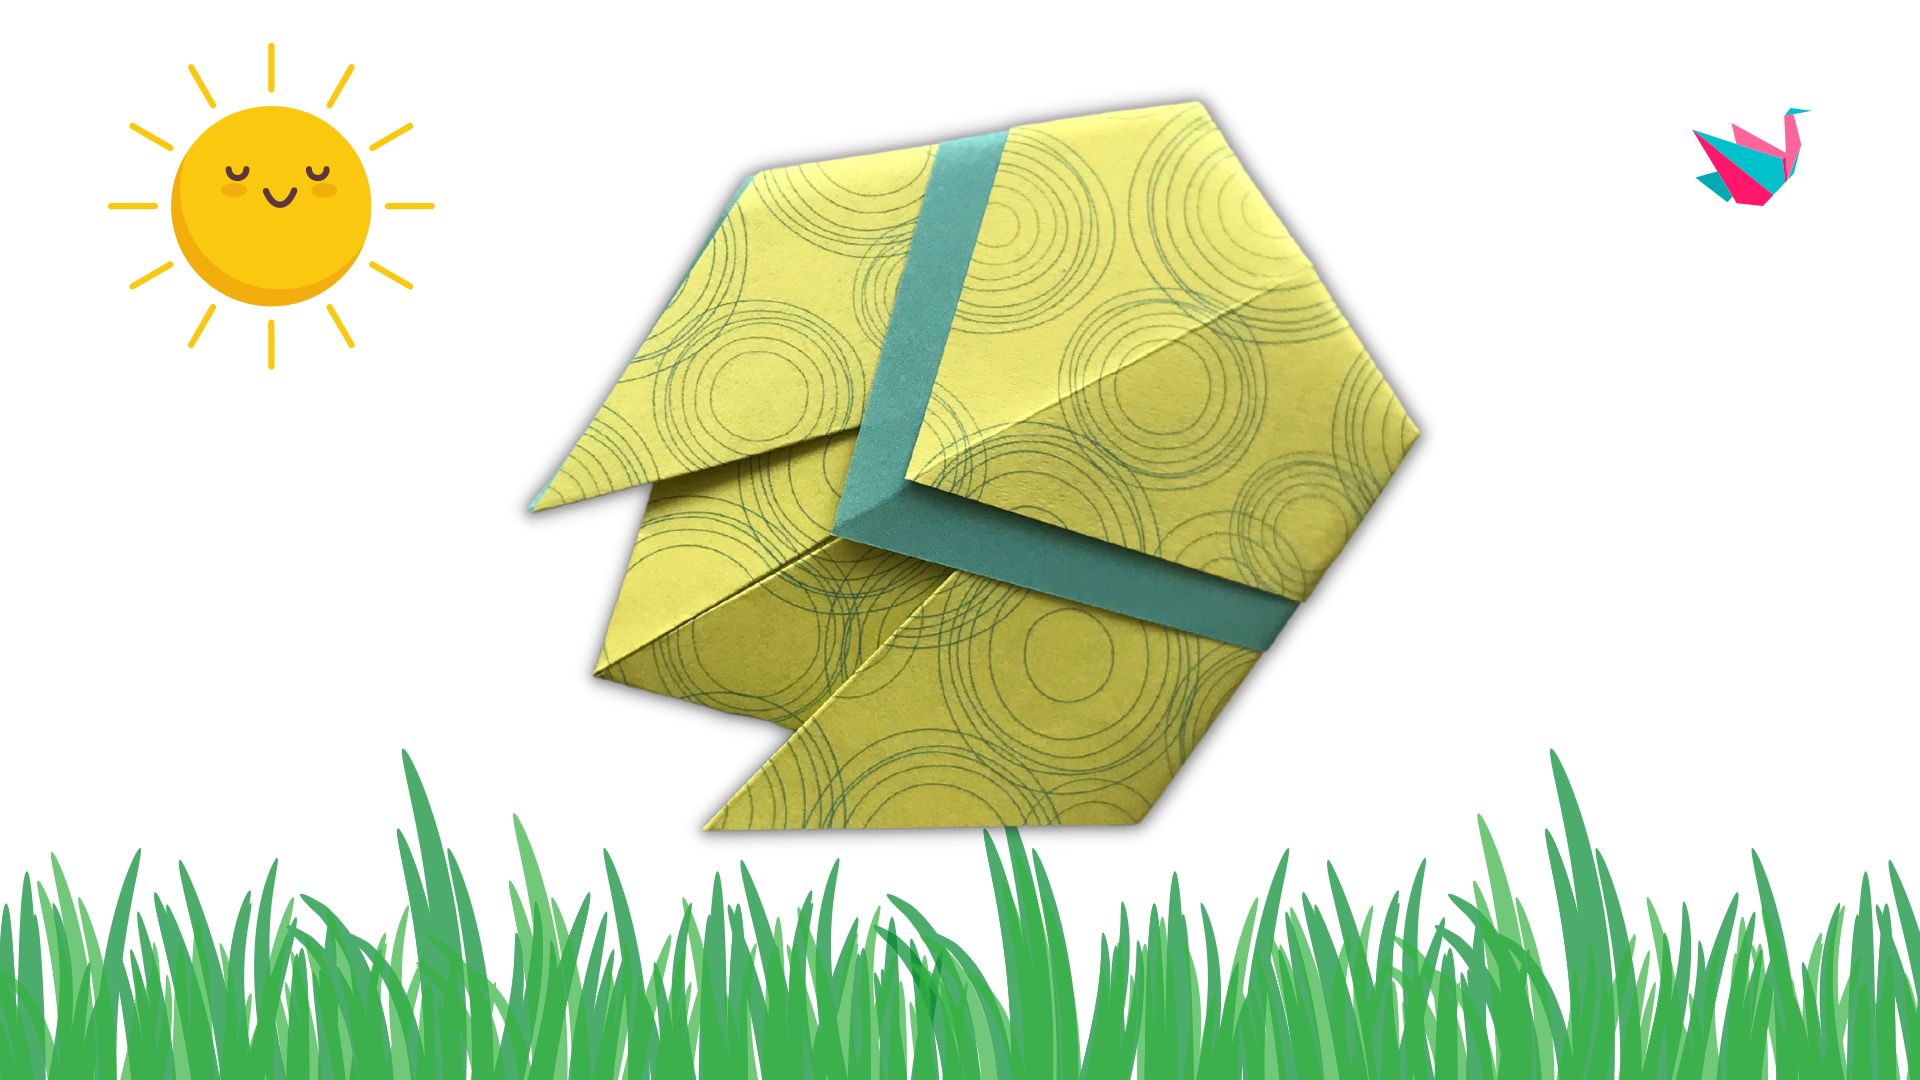 Origami cigale - plier une cigale en papier